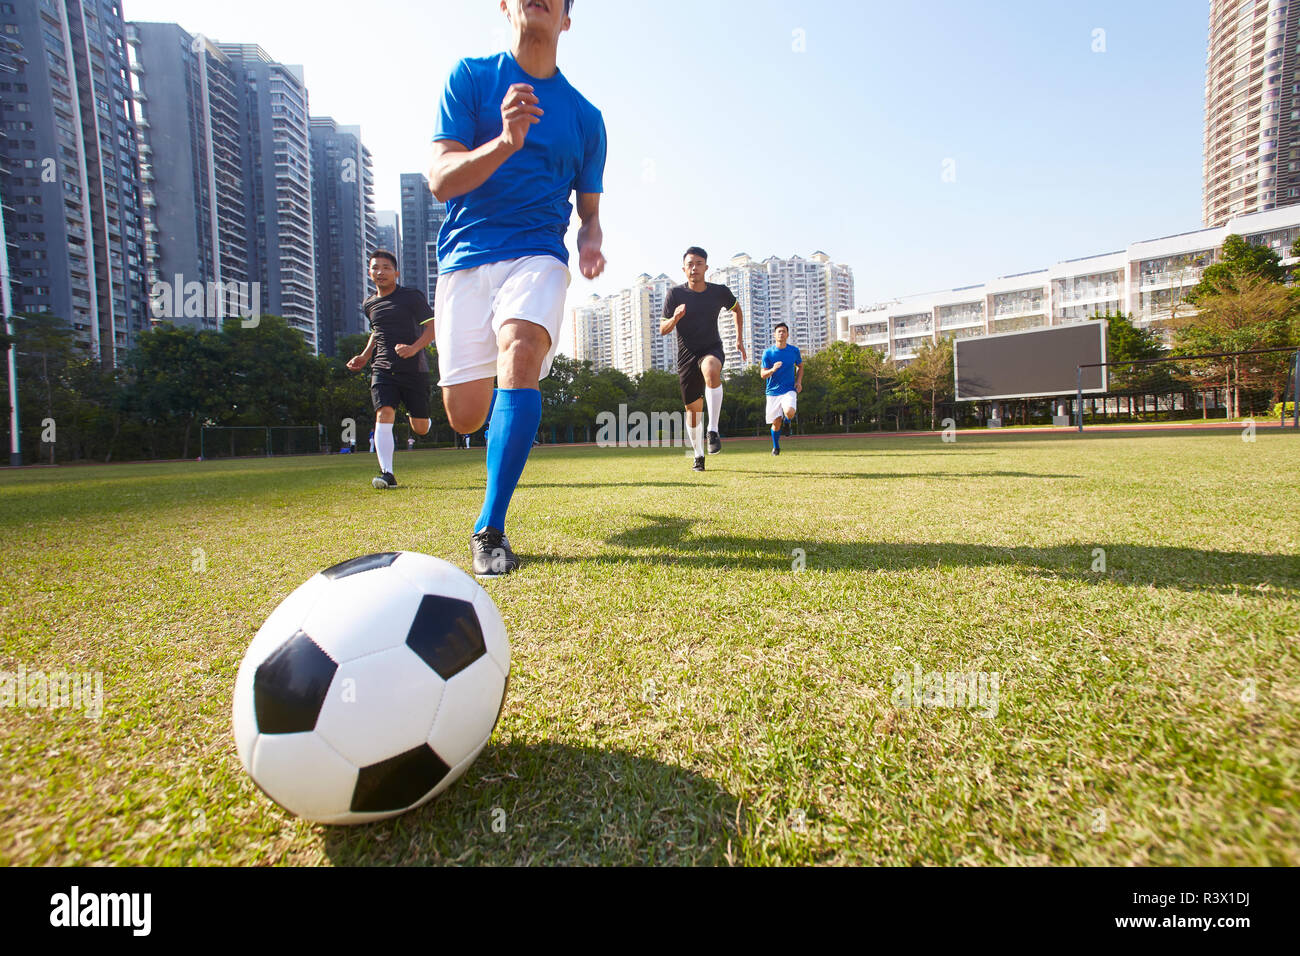 Les jeunes joueurs de football football asiatique courir après la balle lors d'un match Banque D'Images